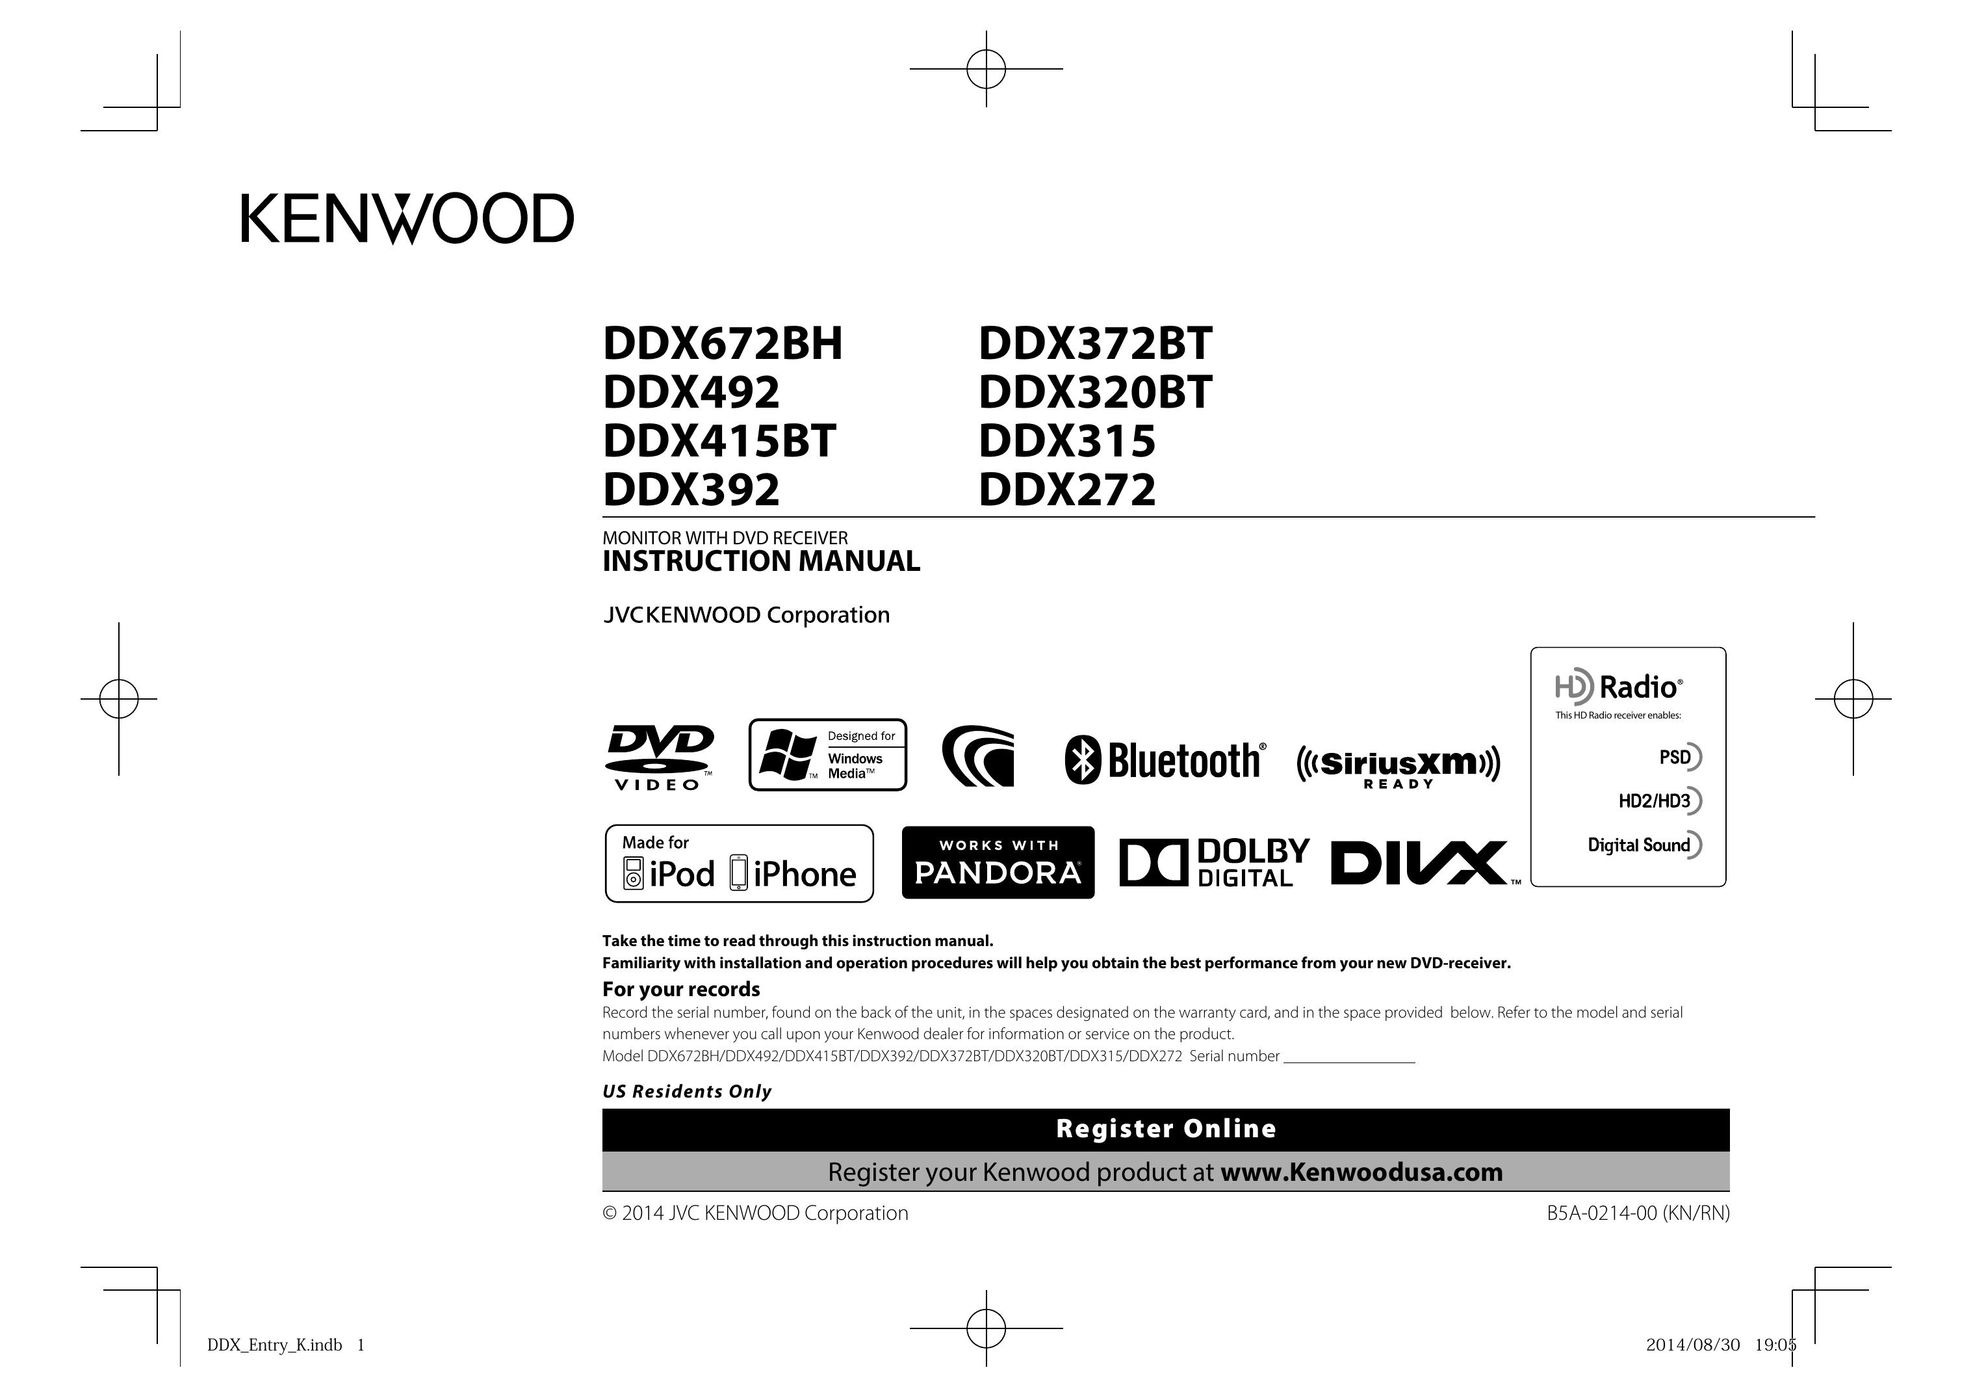 Kenwood DDX415BT Car Video System User Manual